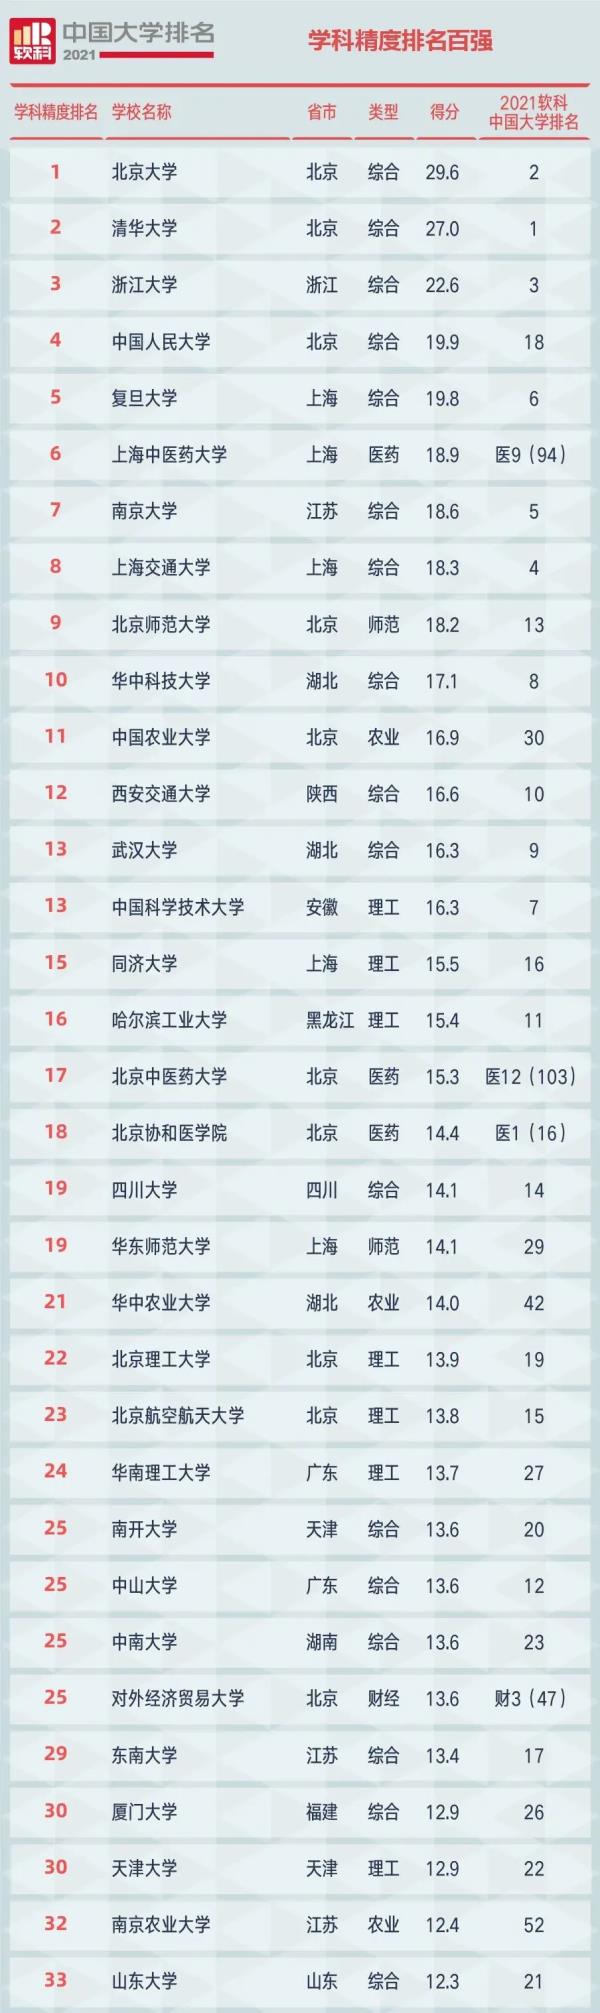 2021中国大学排行榜_2021中国大学排行榜名单